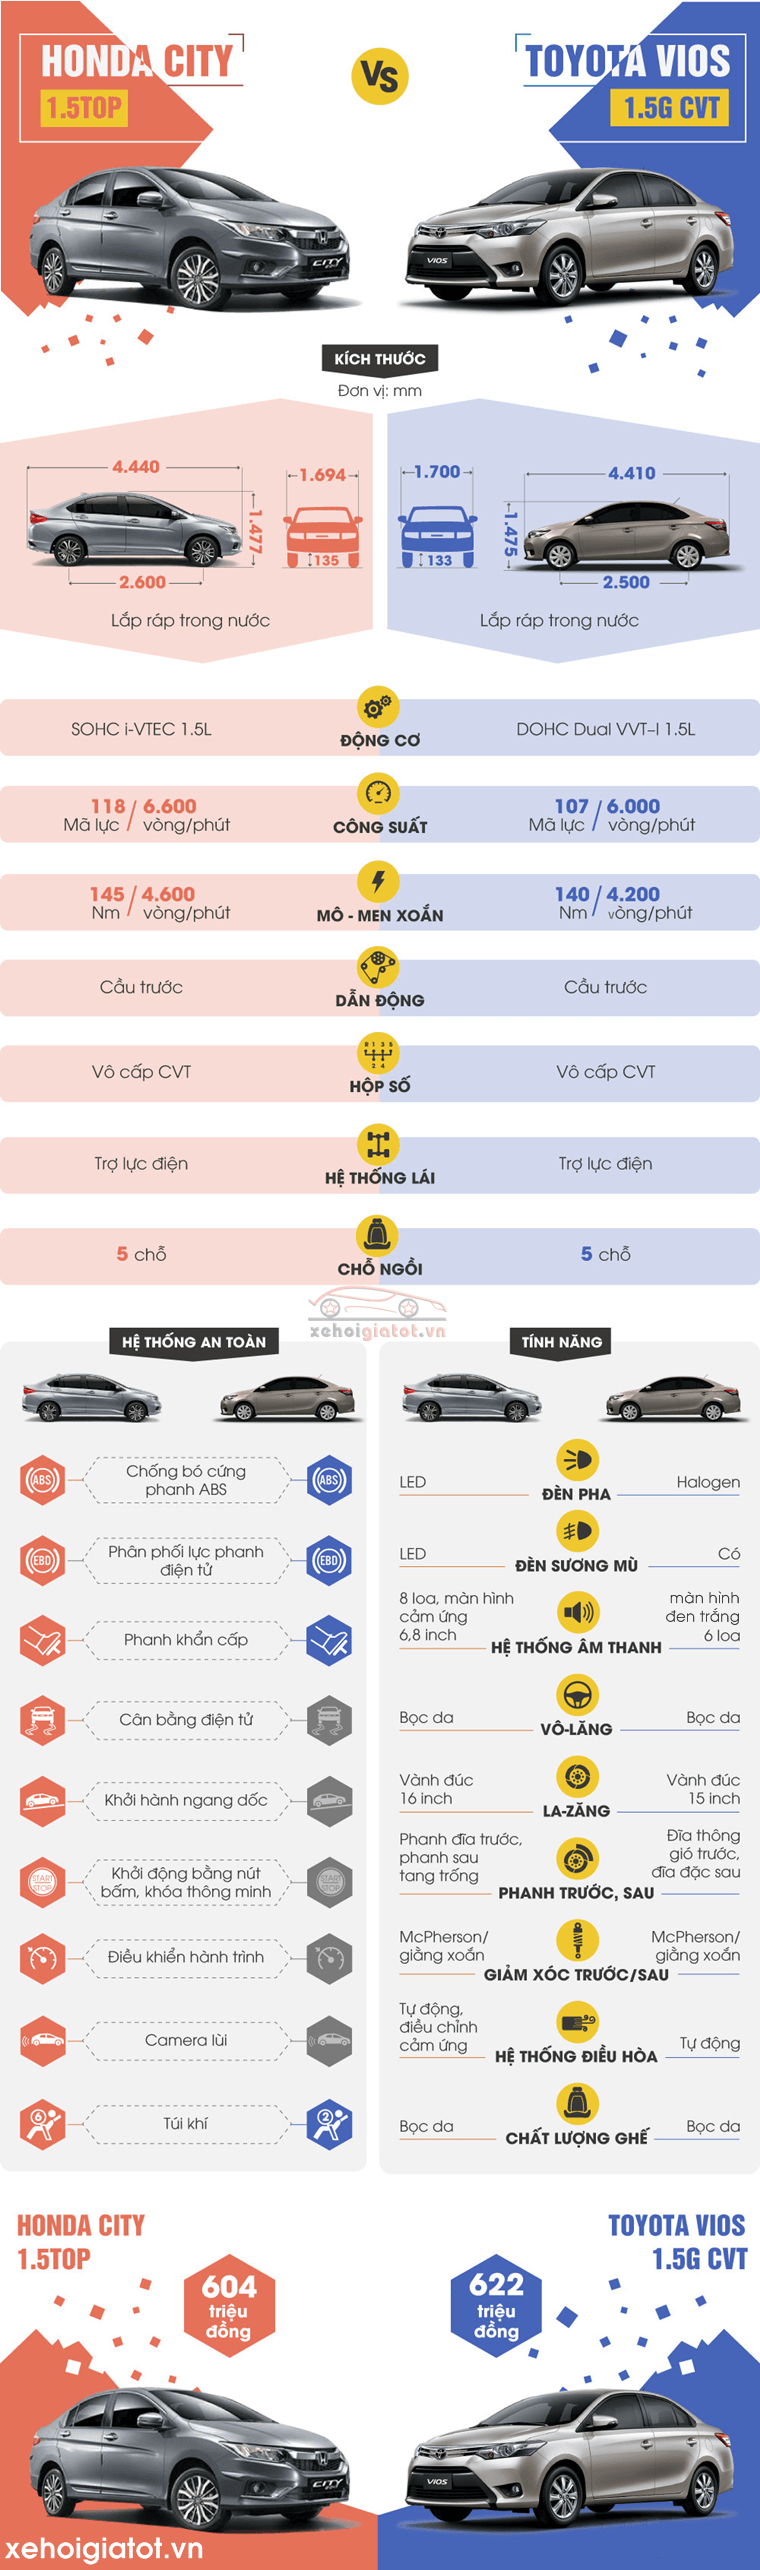 So sánh xe Toyota Vios 1.5 G và Honda City 1.5 TOP